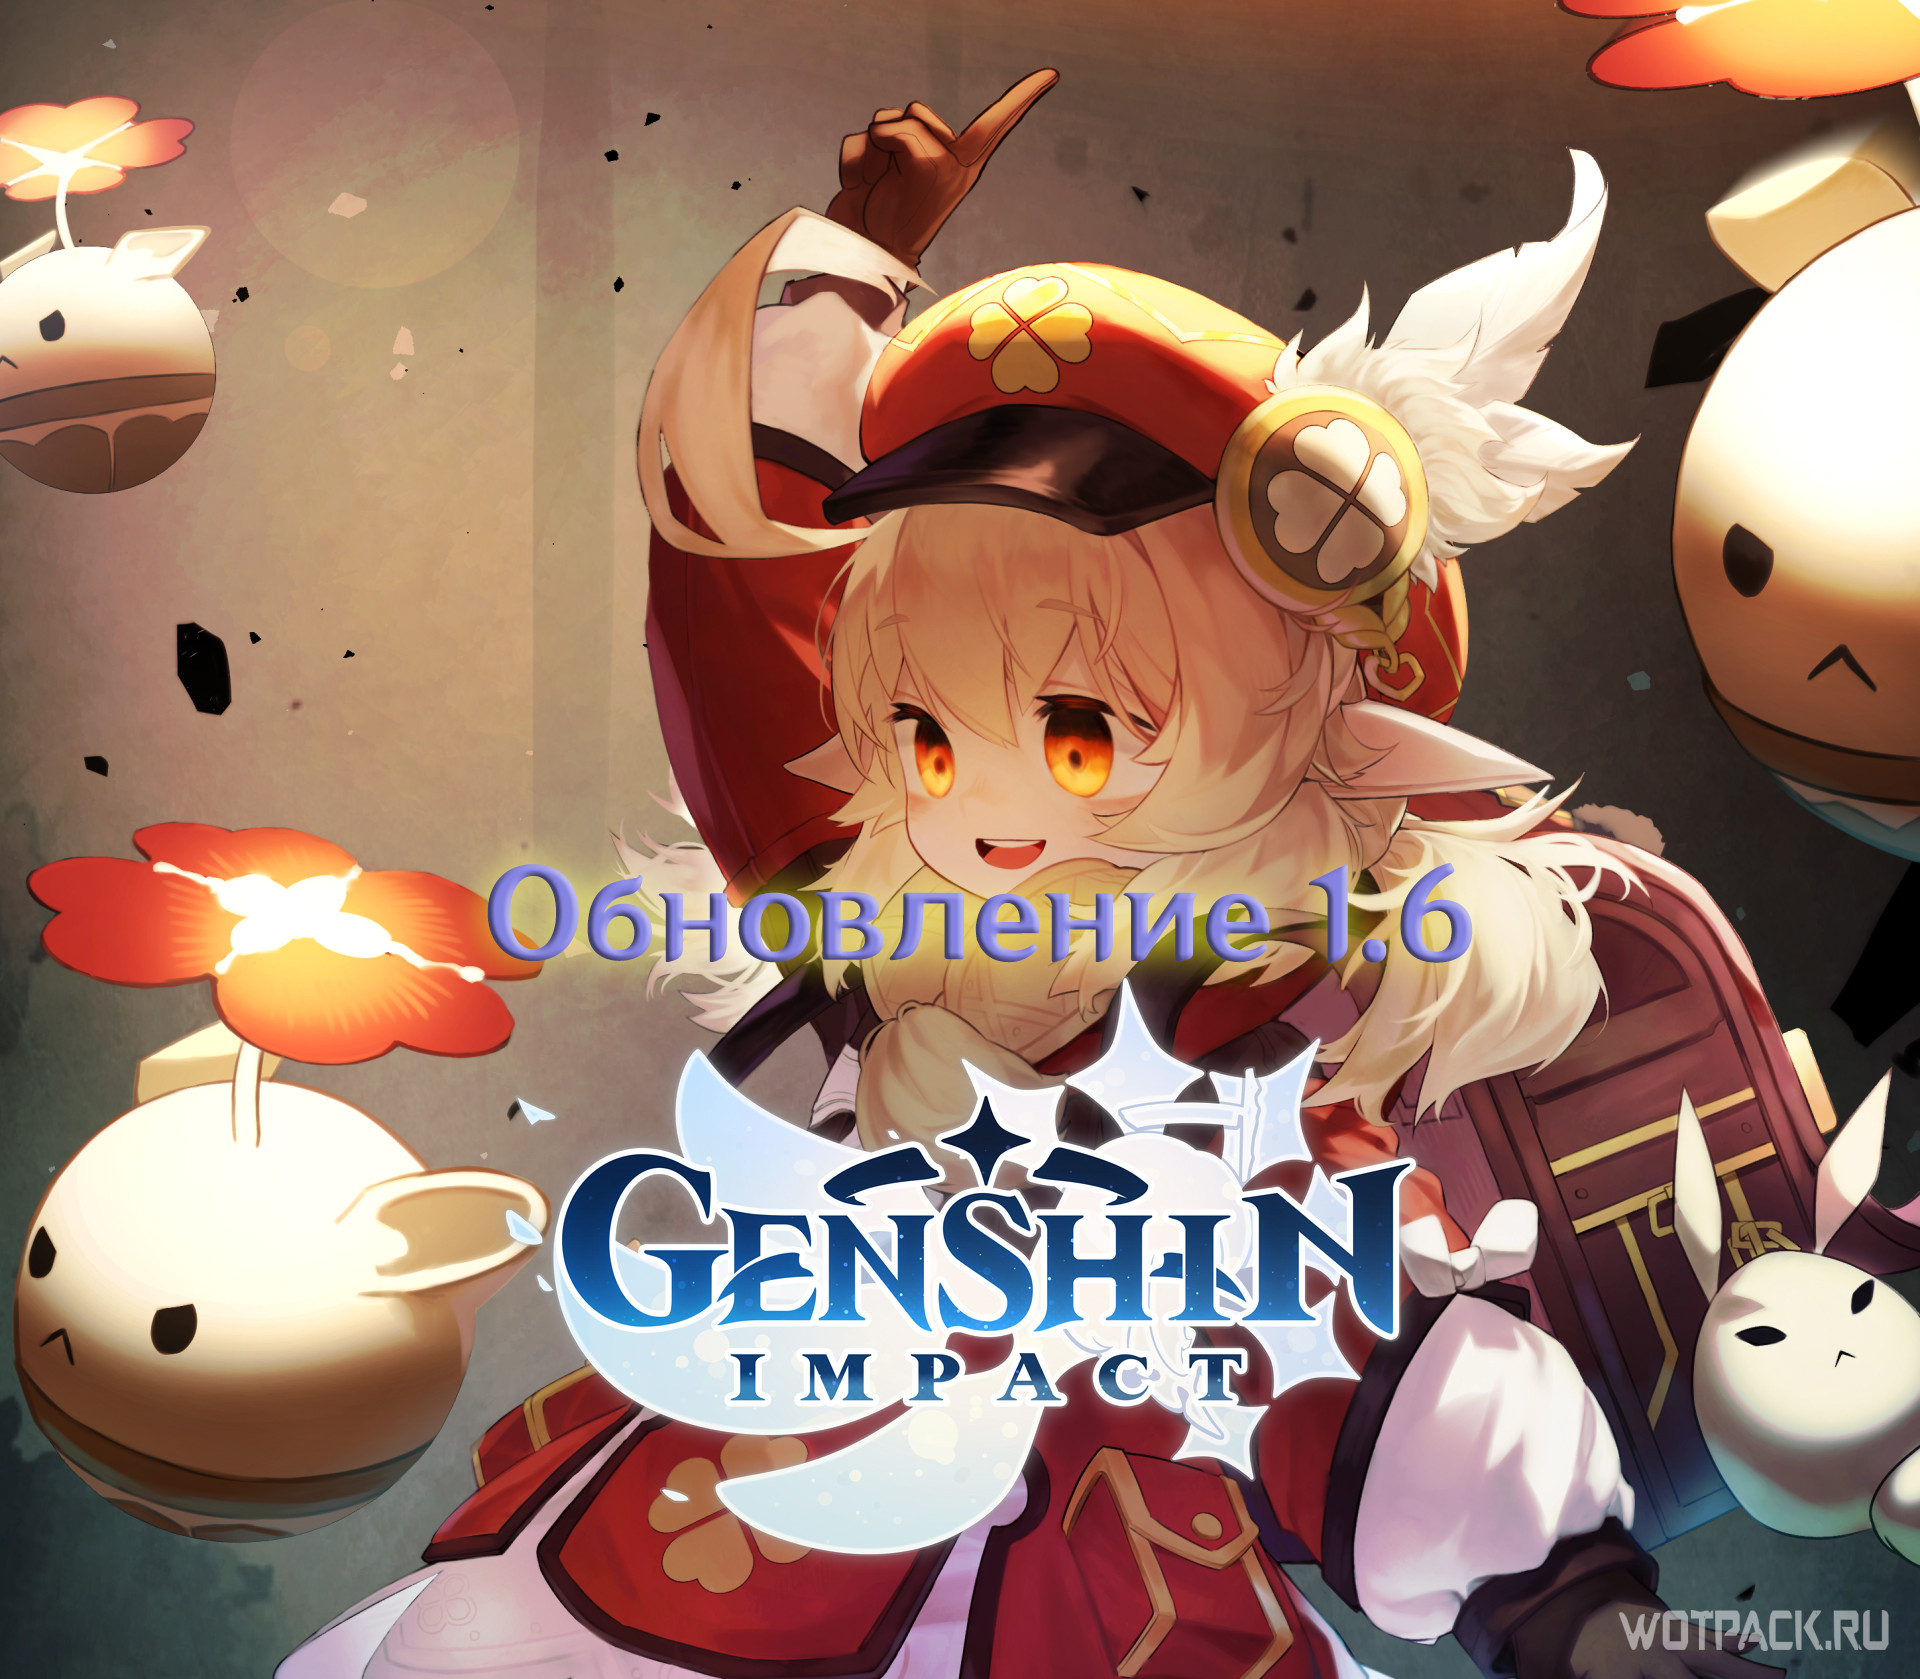 Versão 1.6 de Genshin Impact chega em 9 de junho com novo personagem